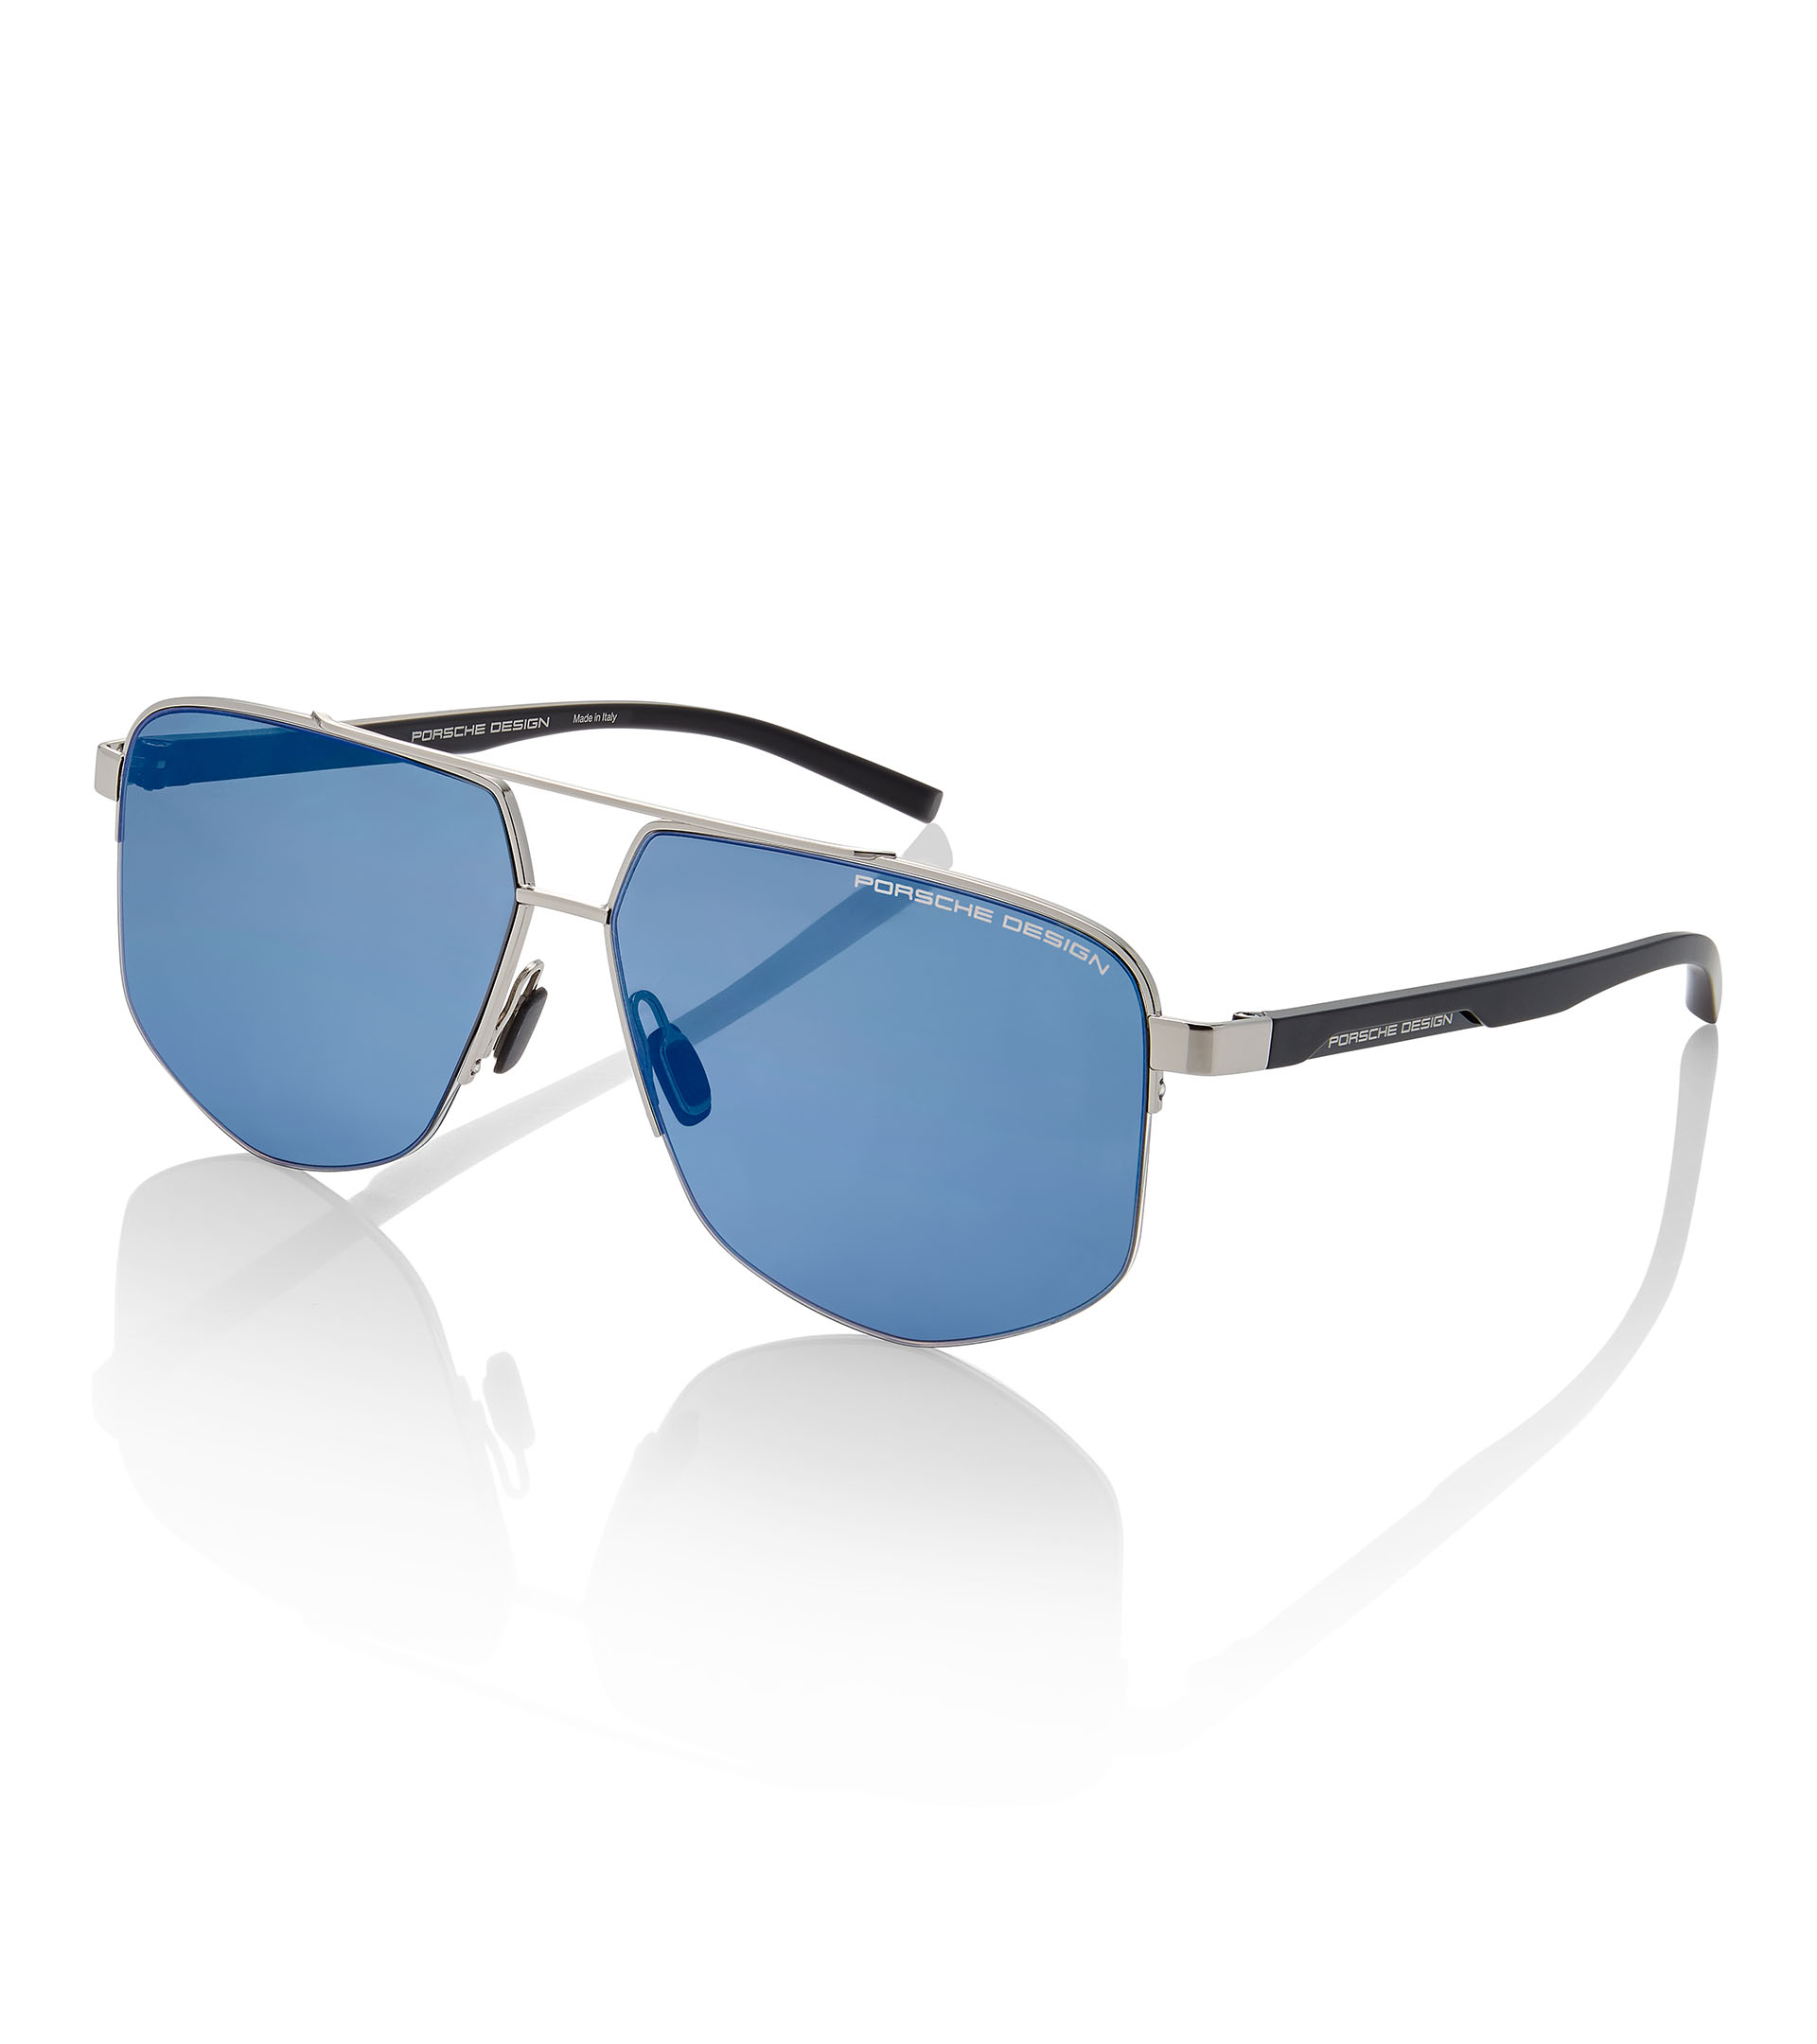 Sunglasses P´8696 - Square Sunglasses for Men | Porsche Design 